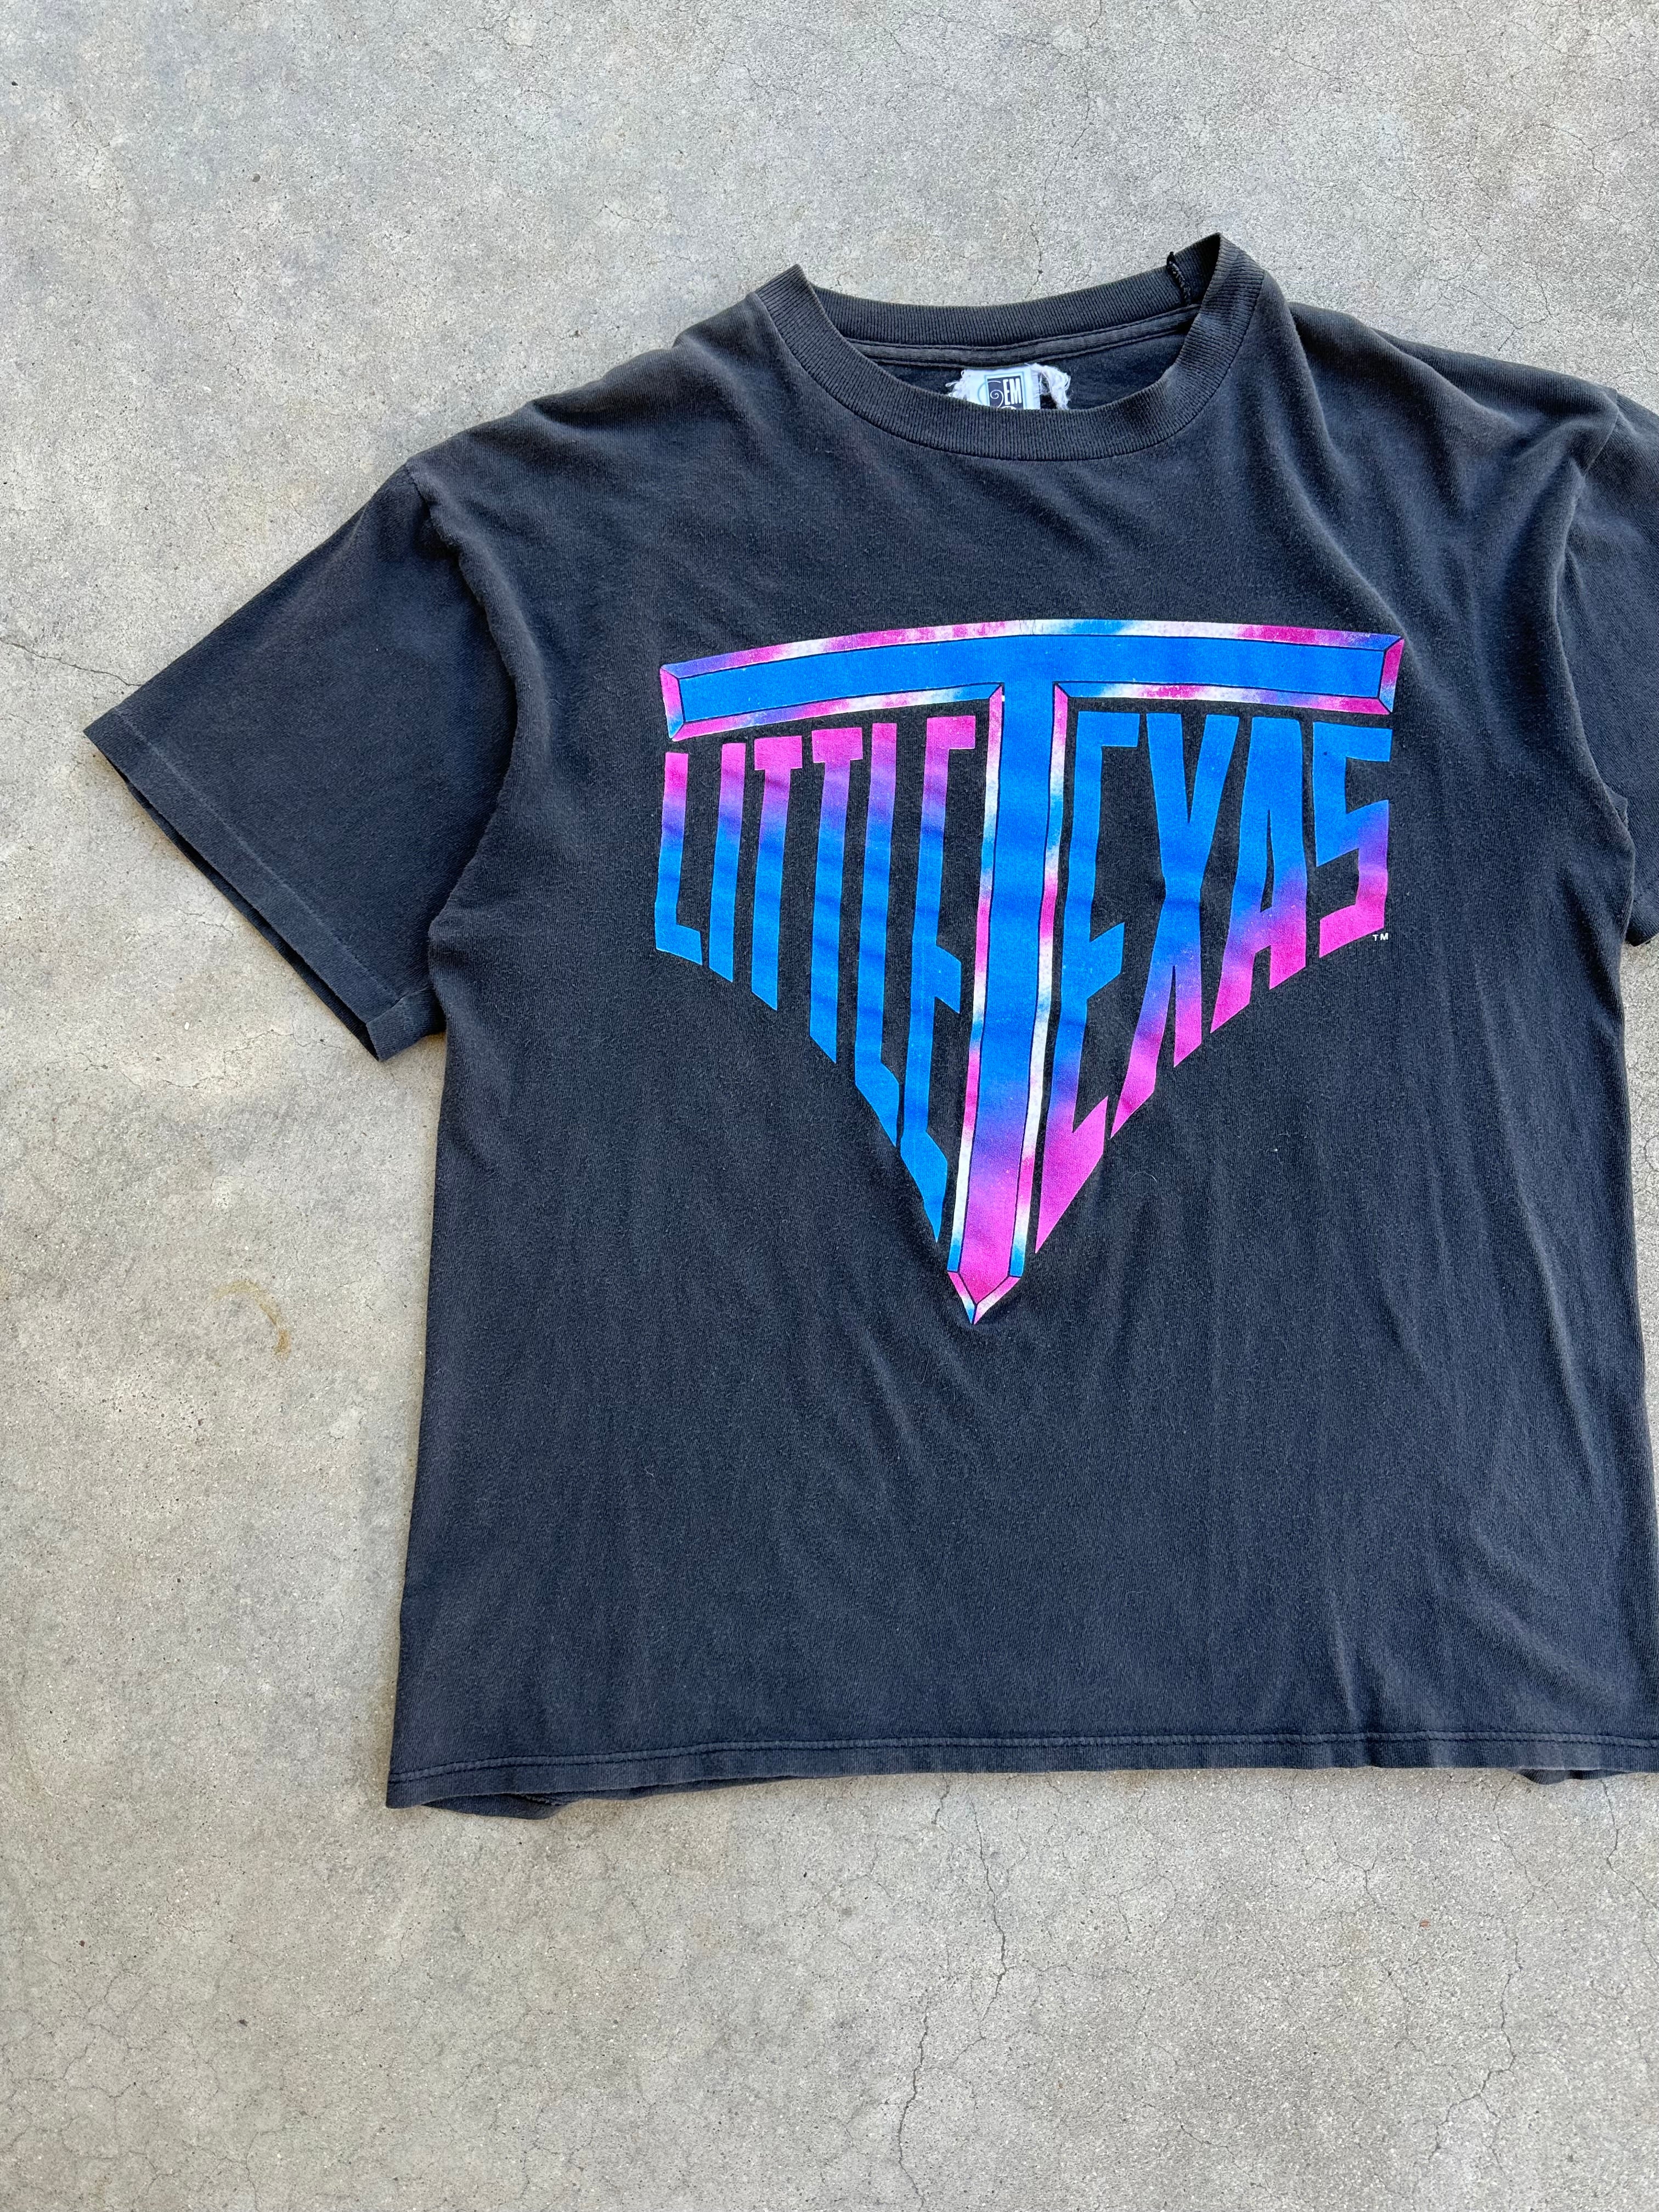 1990s Little Texas Tour T-Shirt (M/L)